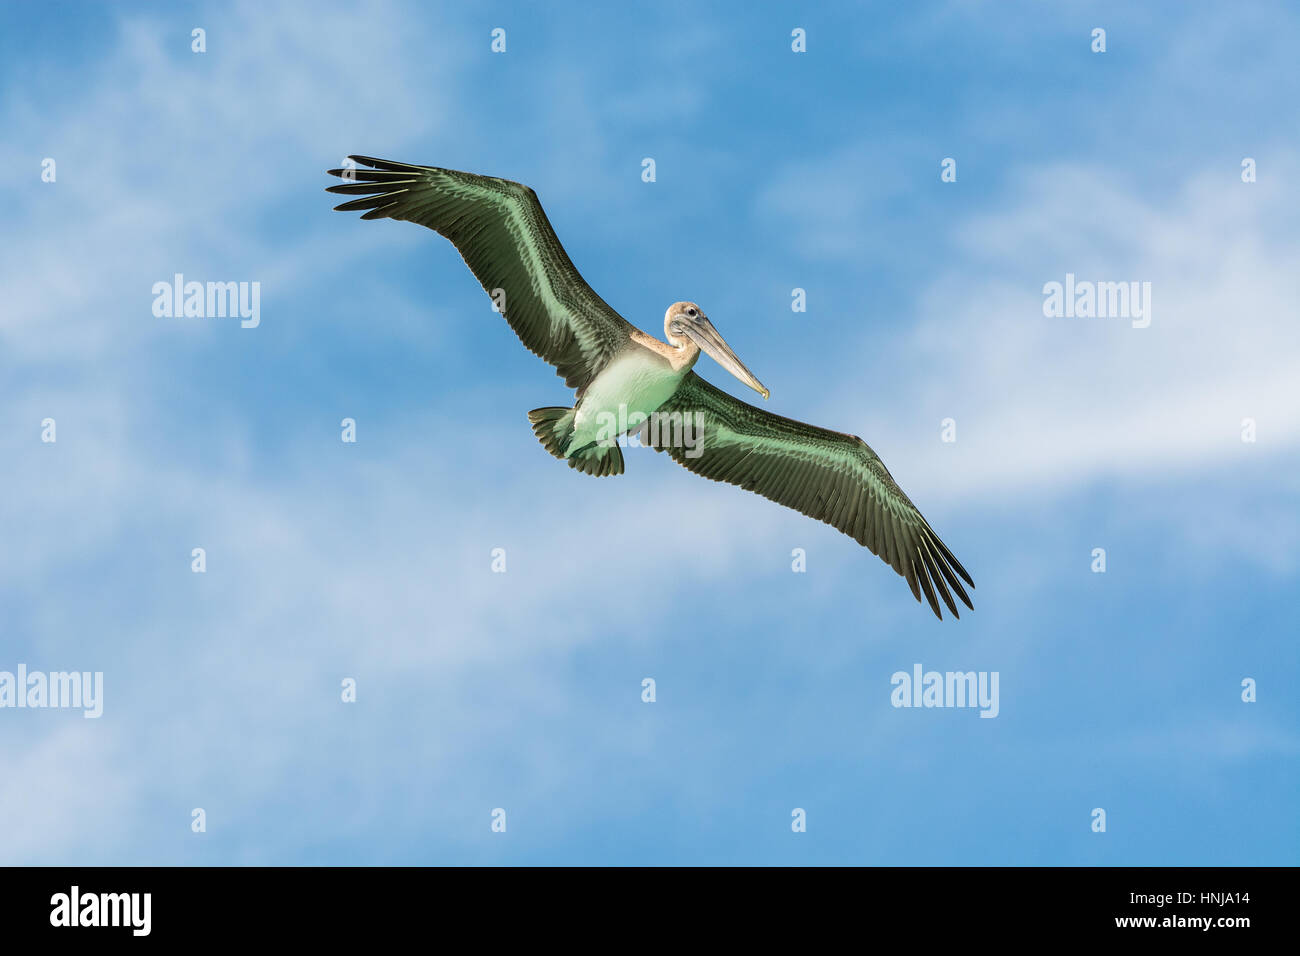 Flying pelican, prêt pour la pêche, la République Dominicaine Banque D'Images